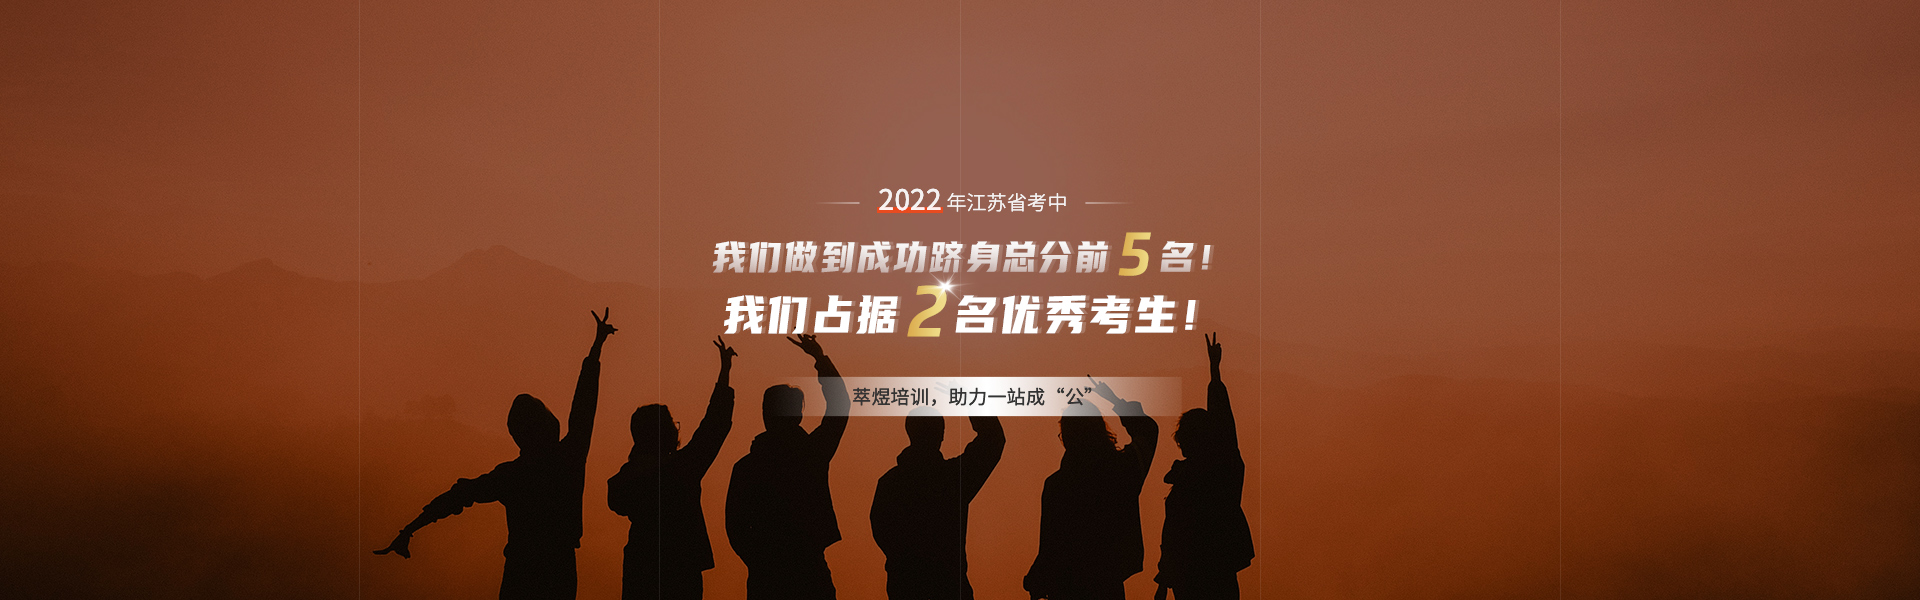 2022江苏省考中成功跻身前5